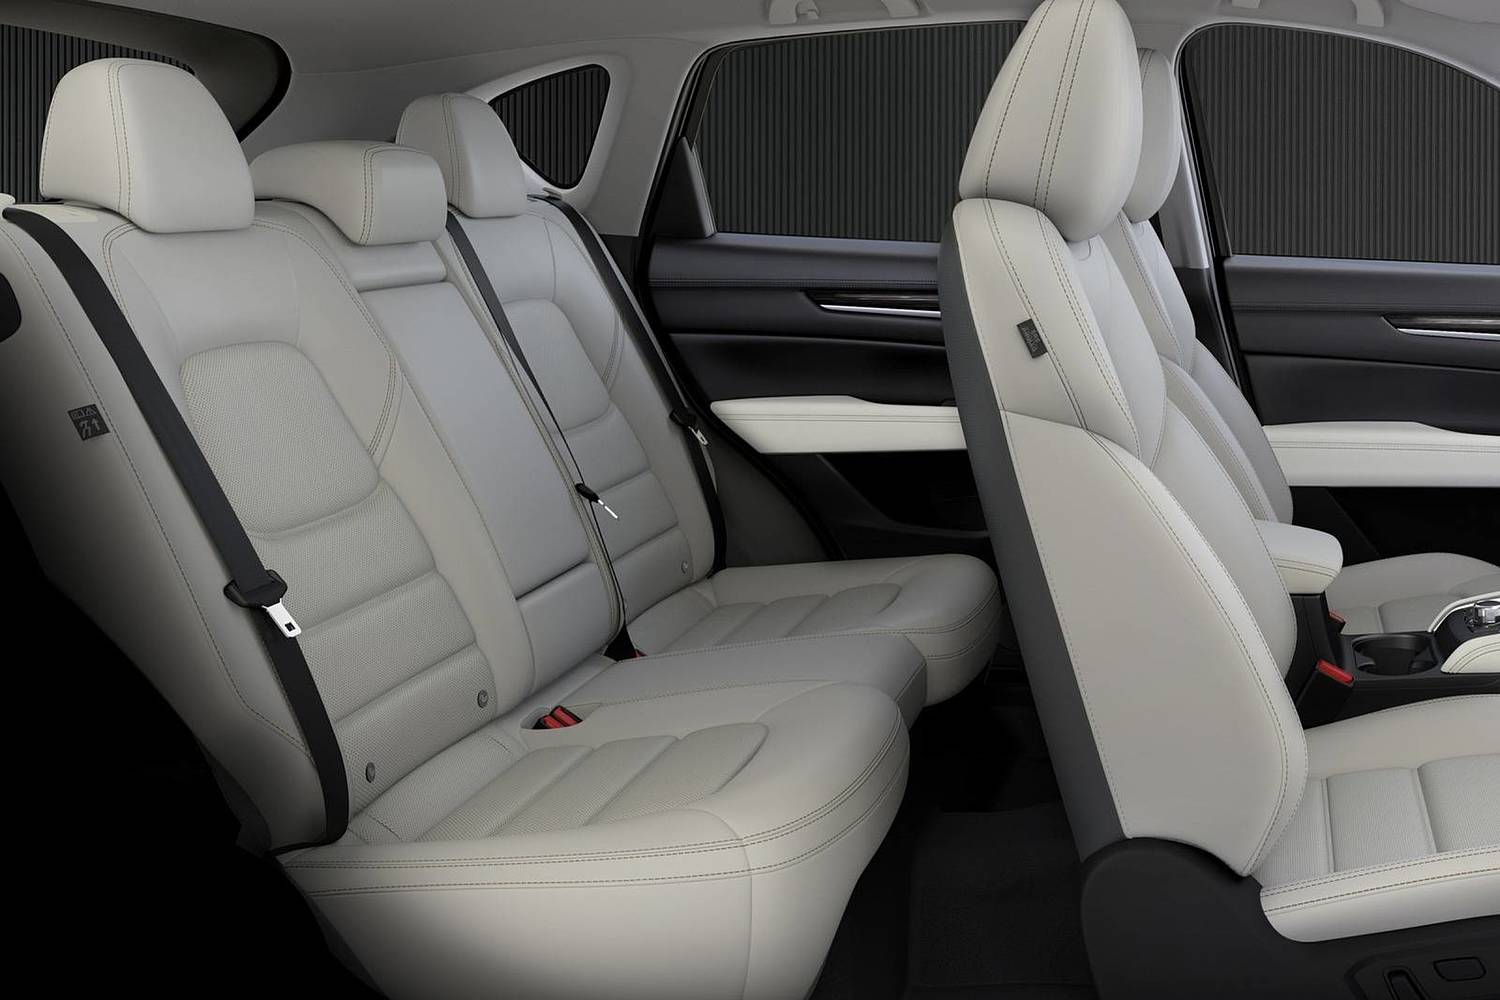 Mazda CX-5 Grand Touring 4dr SUV Rear Interior (2017 model year shown)